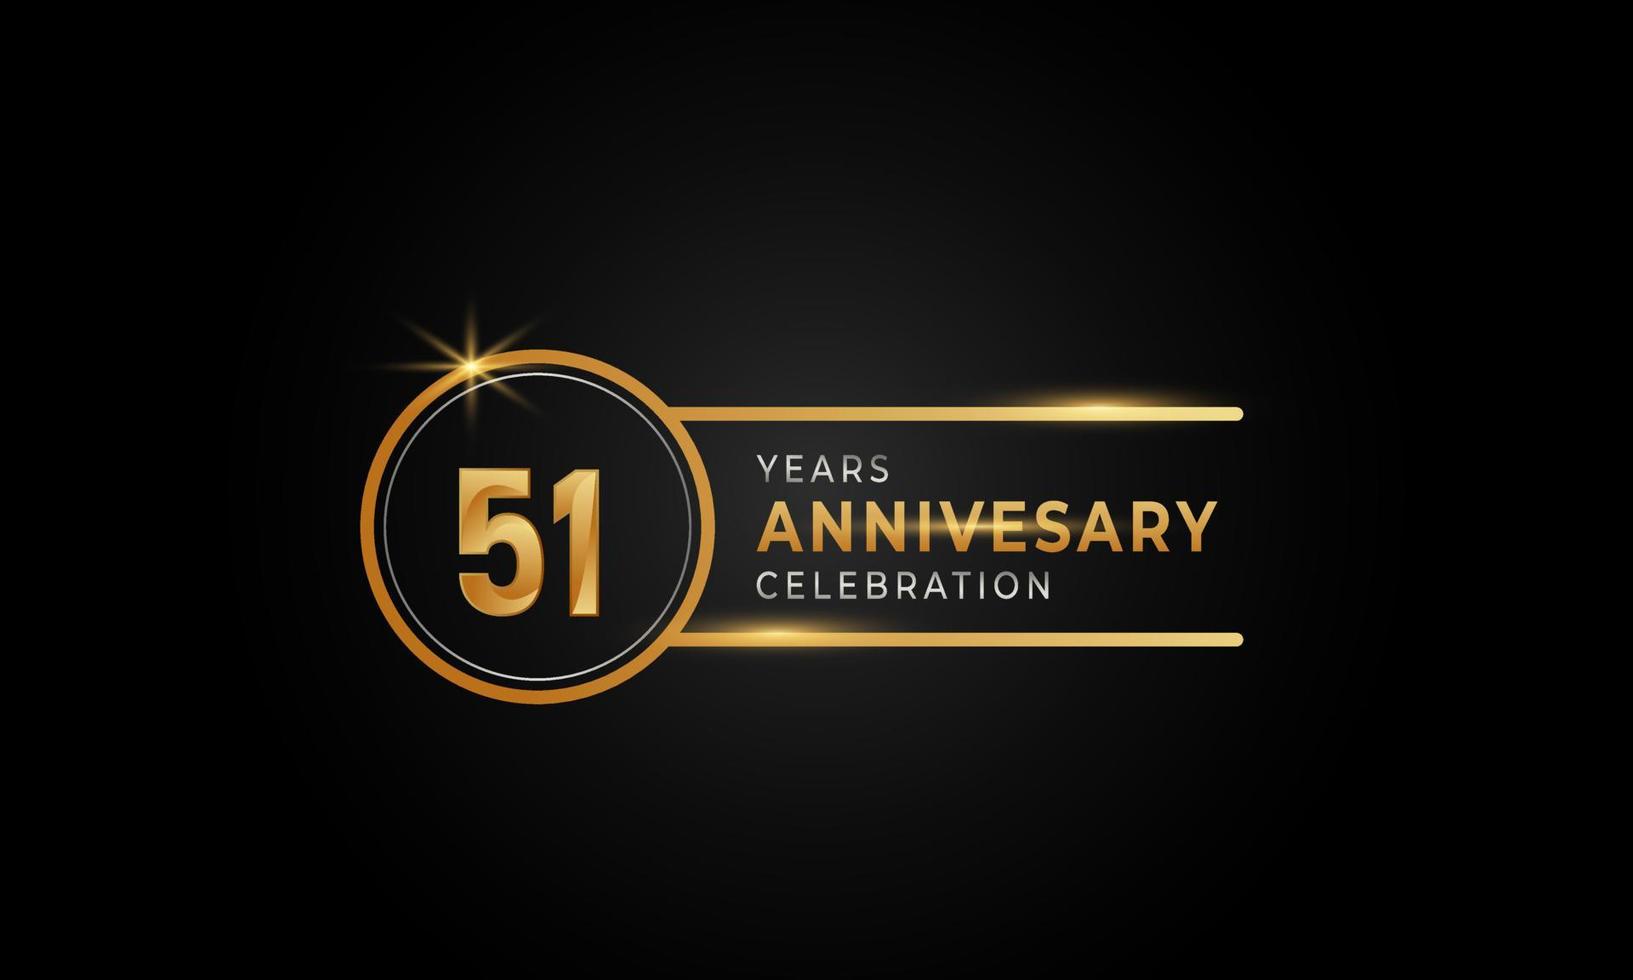 Celebrazione dell'anniversario di 51 anni colore dorato e argento con anello circolare per eventi celebrativi, matrimoni, biglietti di auguri e inviti isolati su sfondo nero vettore